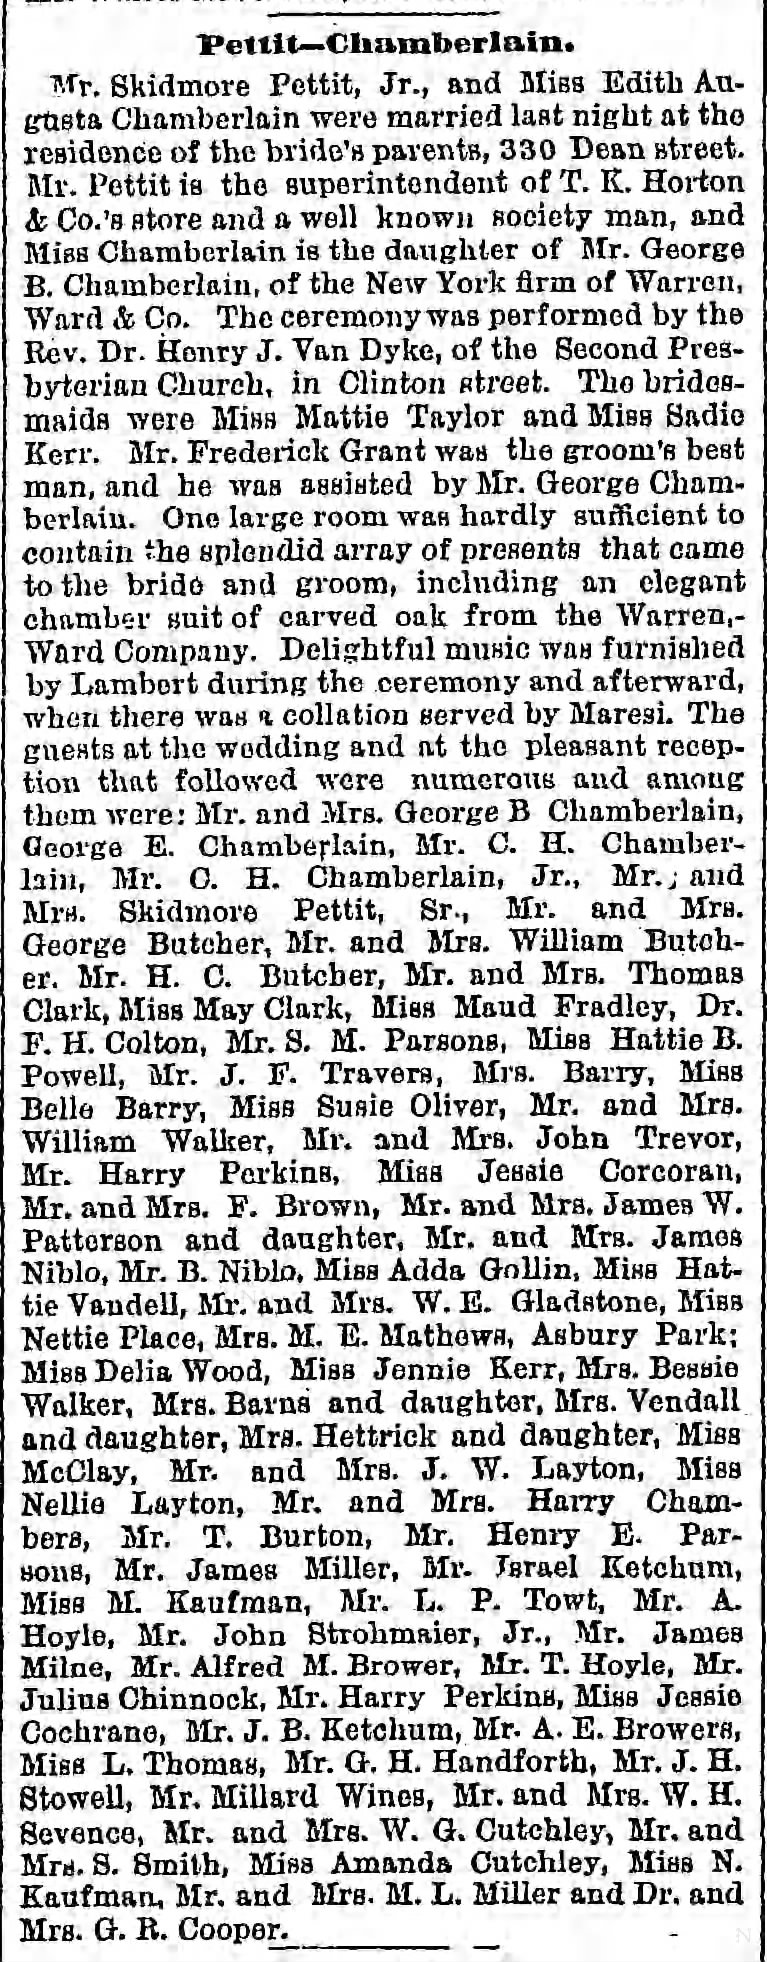 Pettit-Chamberlain Wedding 1888